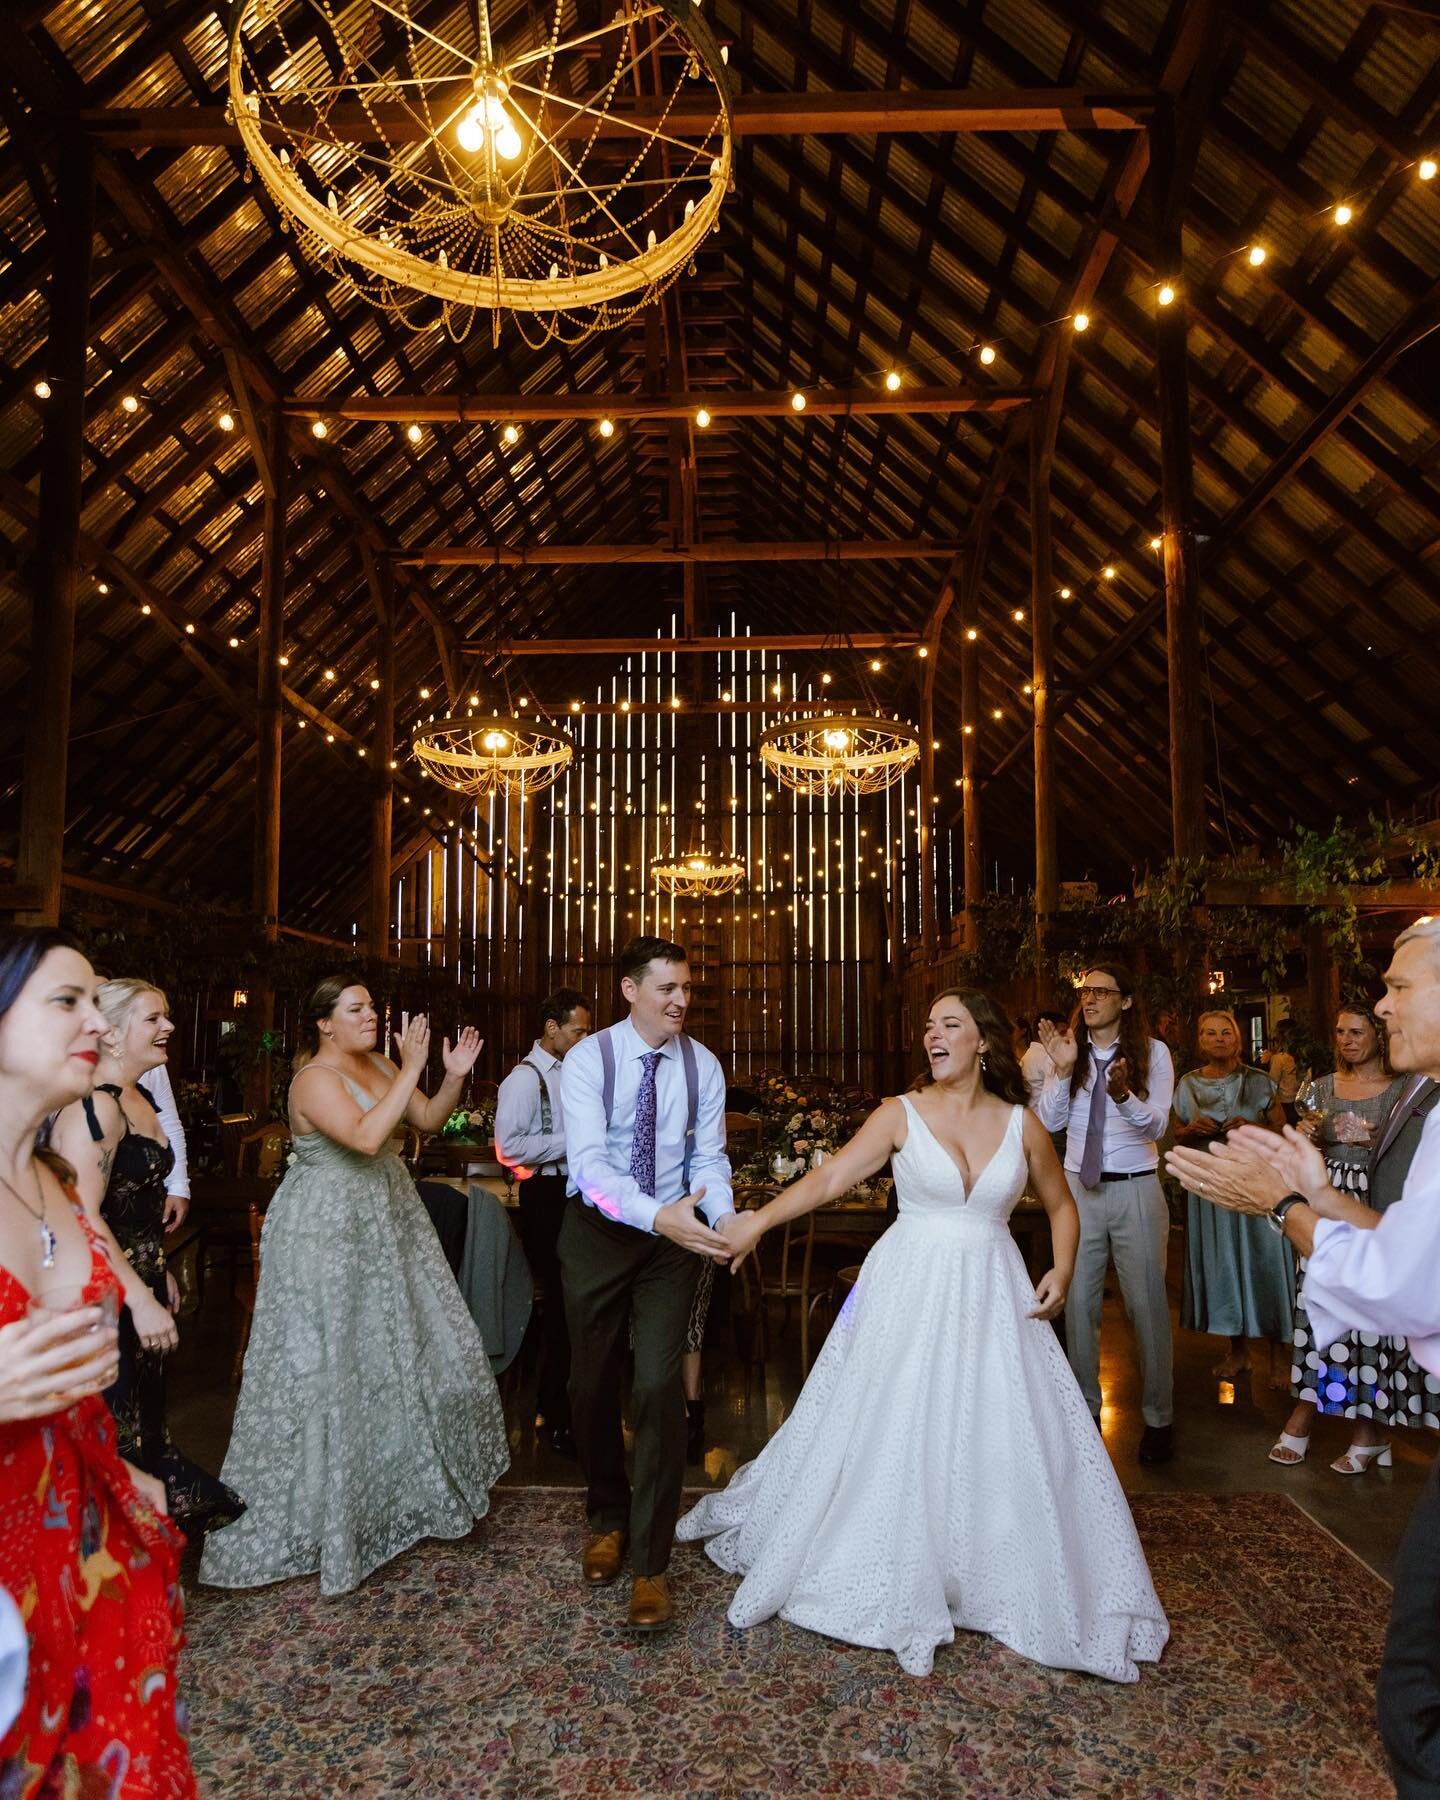 Boogie in a barn | @tinroofbarn | photo: @katyweaverphotography | #barnwedding | #hoodriverwedding | #mthoodwedding | #rusticwedding | #pnwwedding